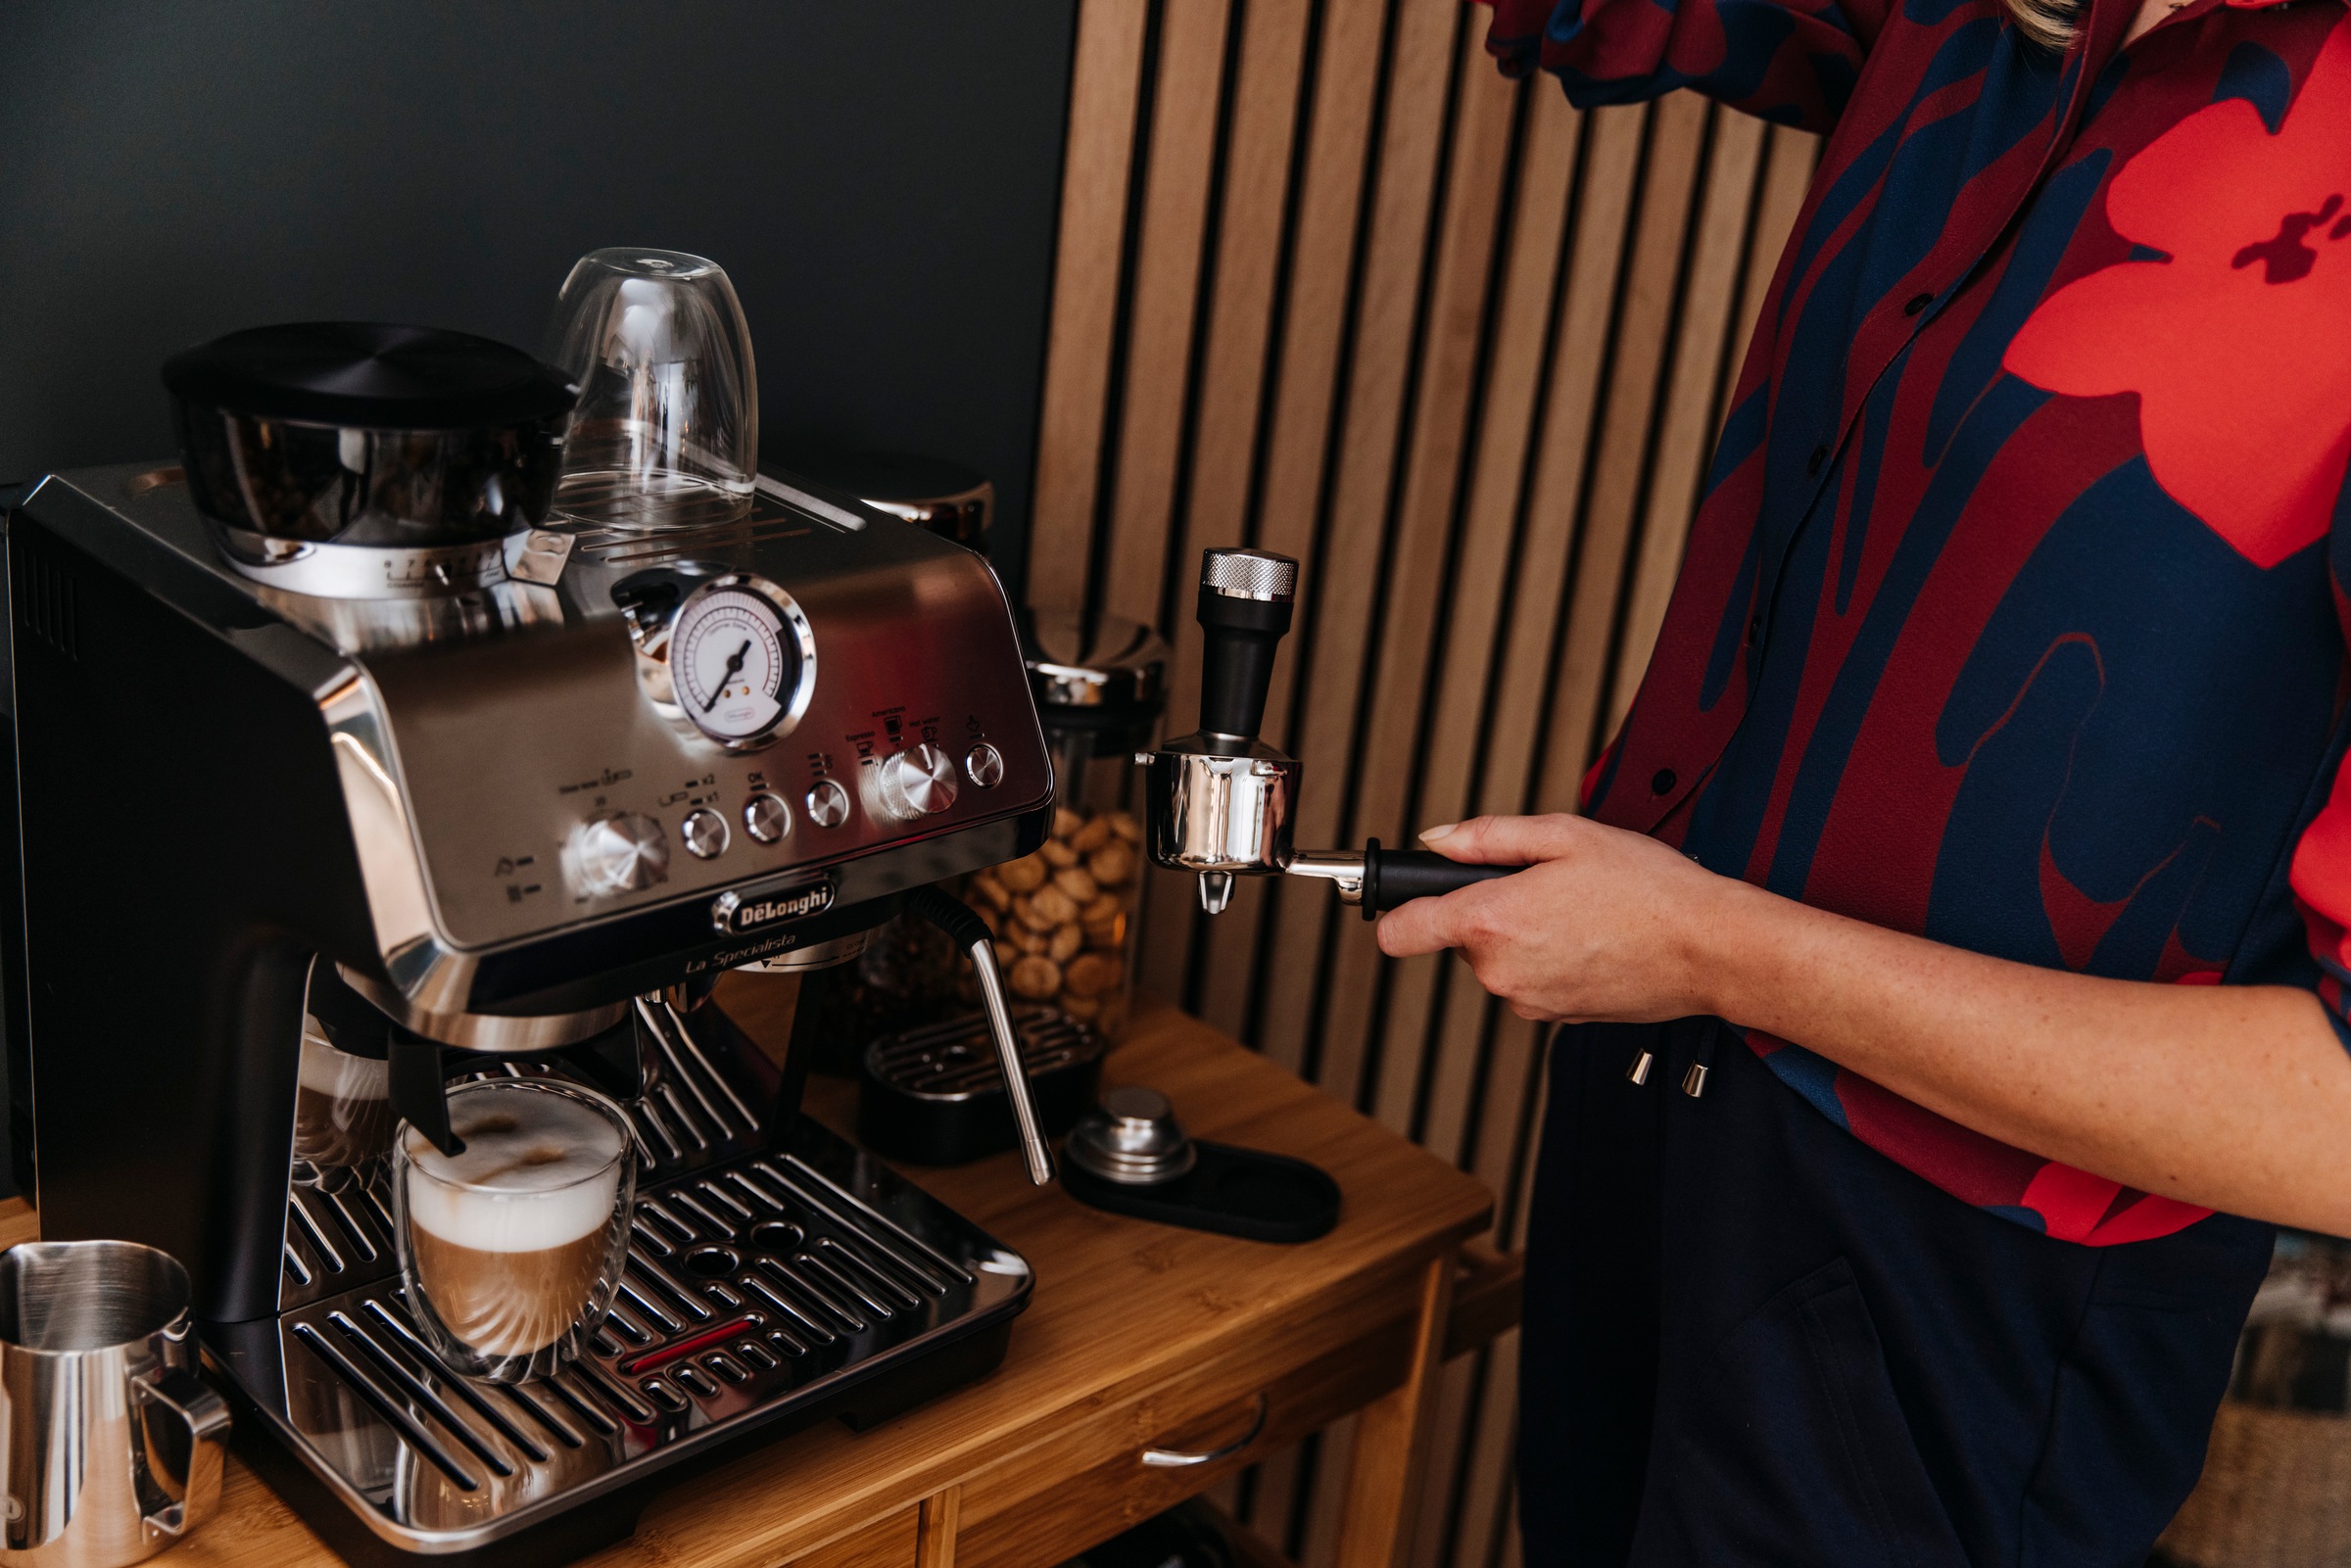 De'Longhi Espressomaschine »La Specialista Arte EC9155.MB«, Siebträger, inkl. 250g Selezione Espresso im Wert von UVP € 6,49